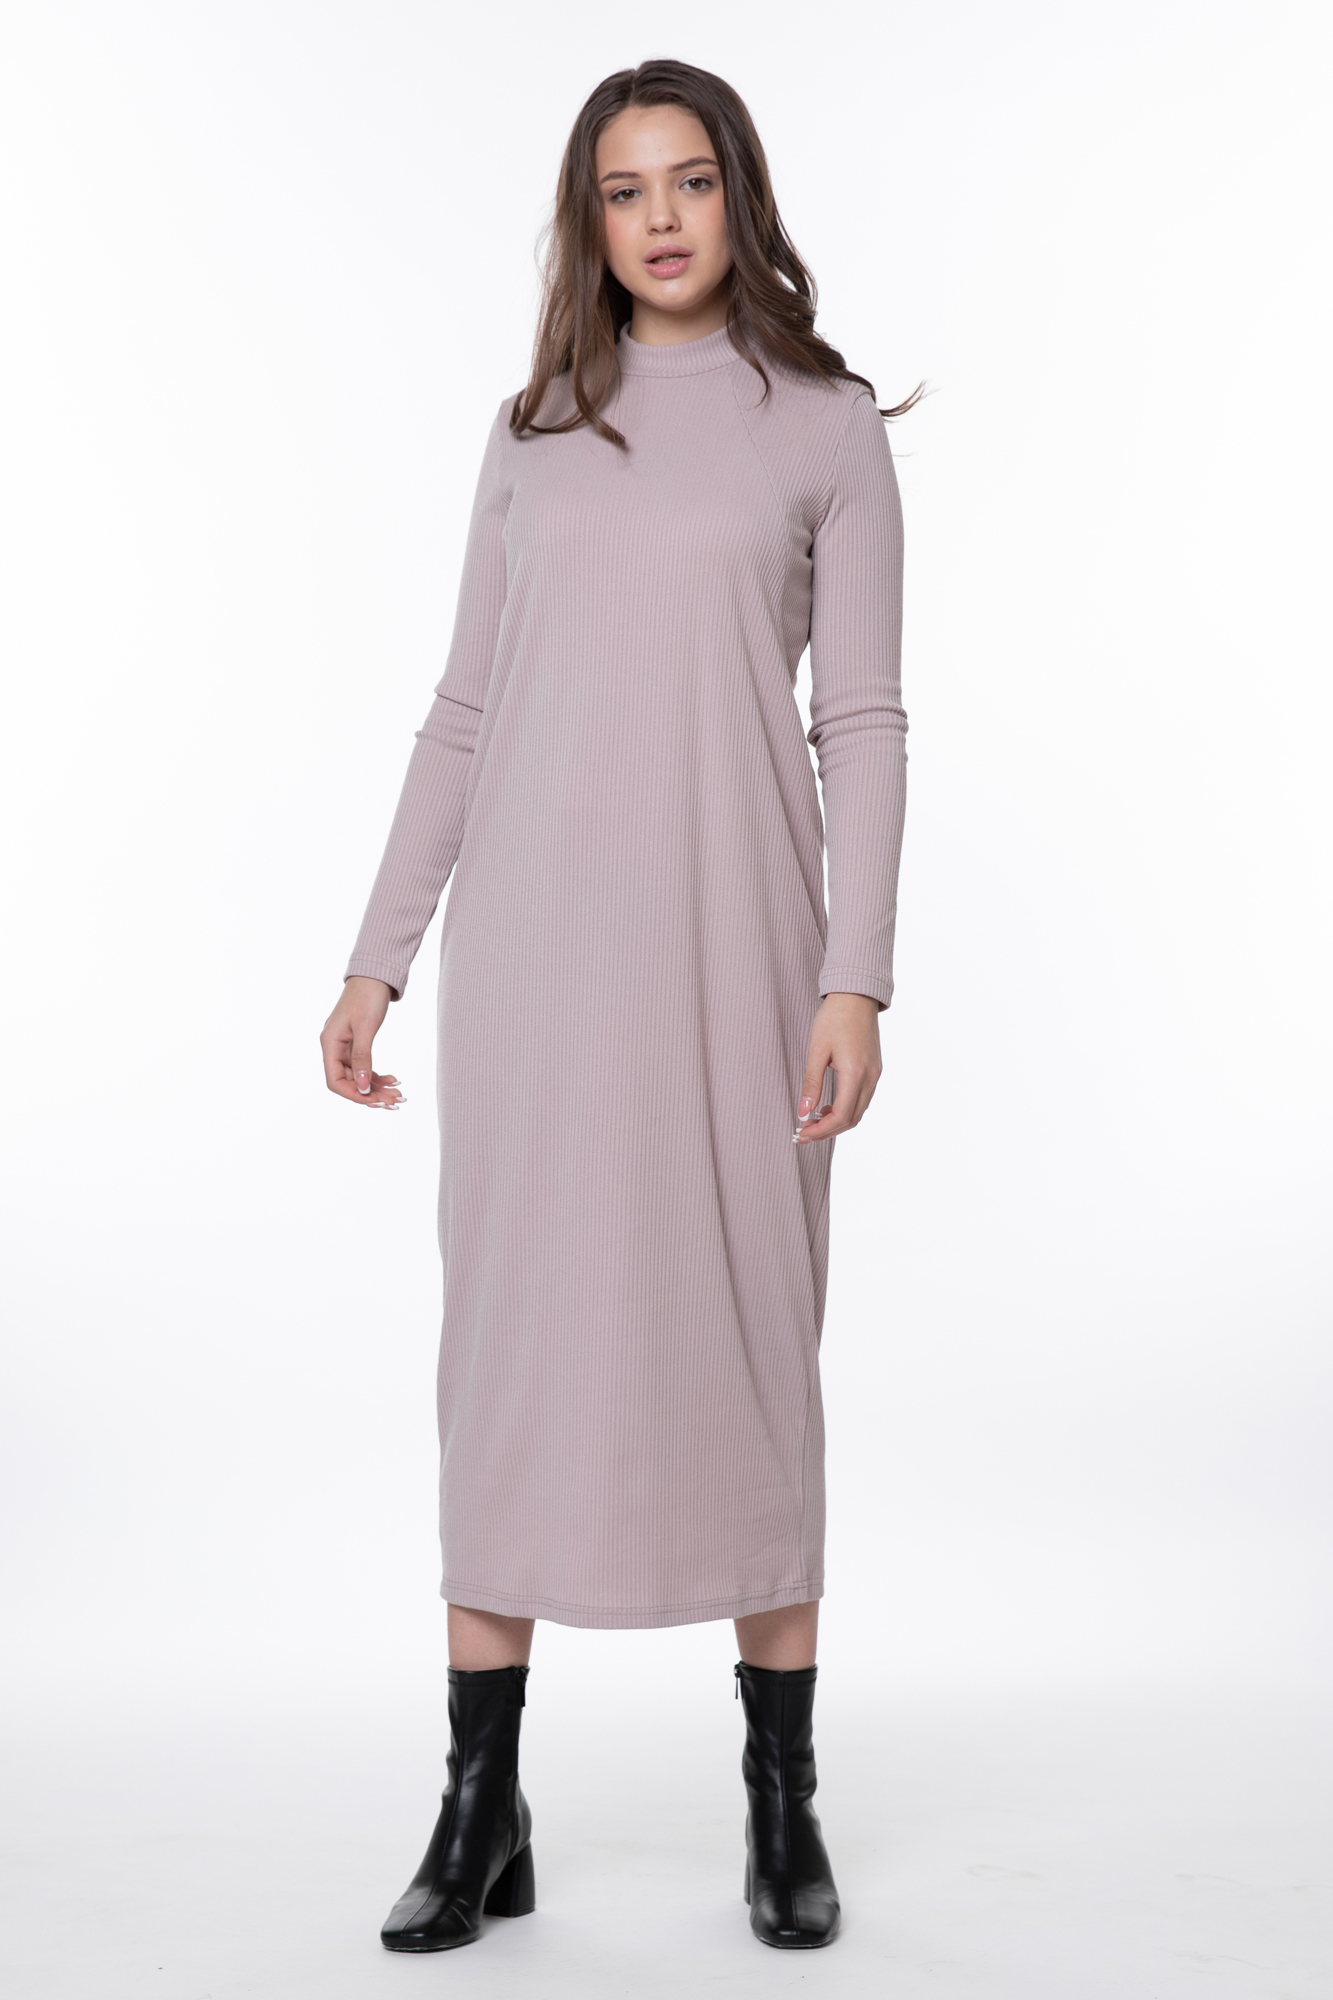 Платье для беременных женское Magica bellezza 0178а розовое 50 RU